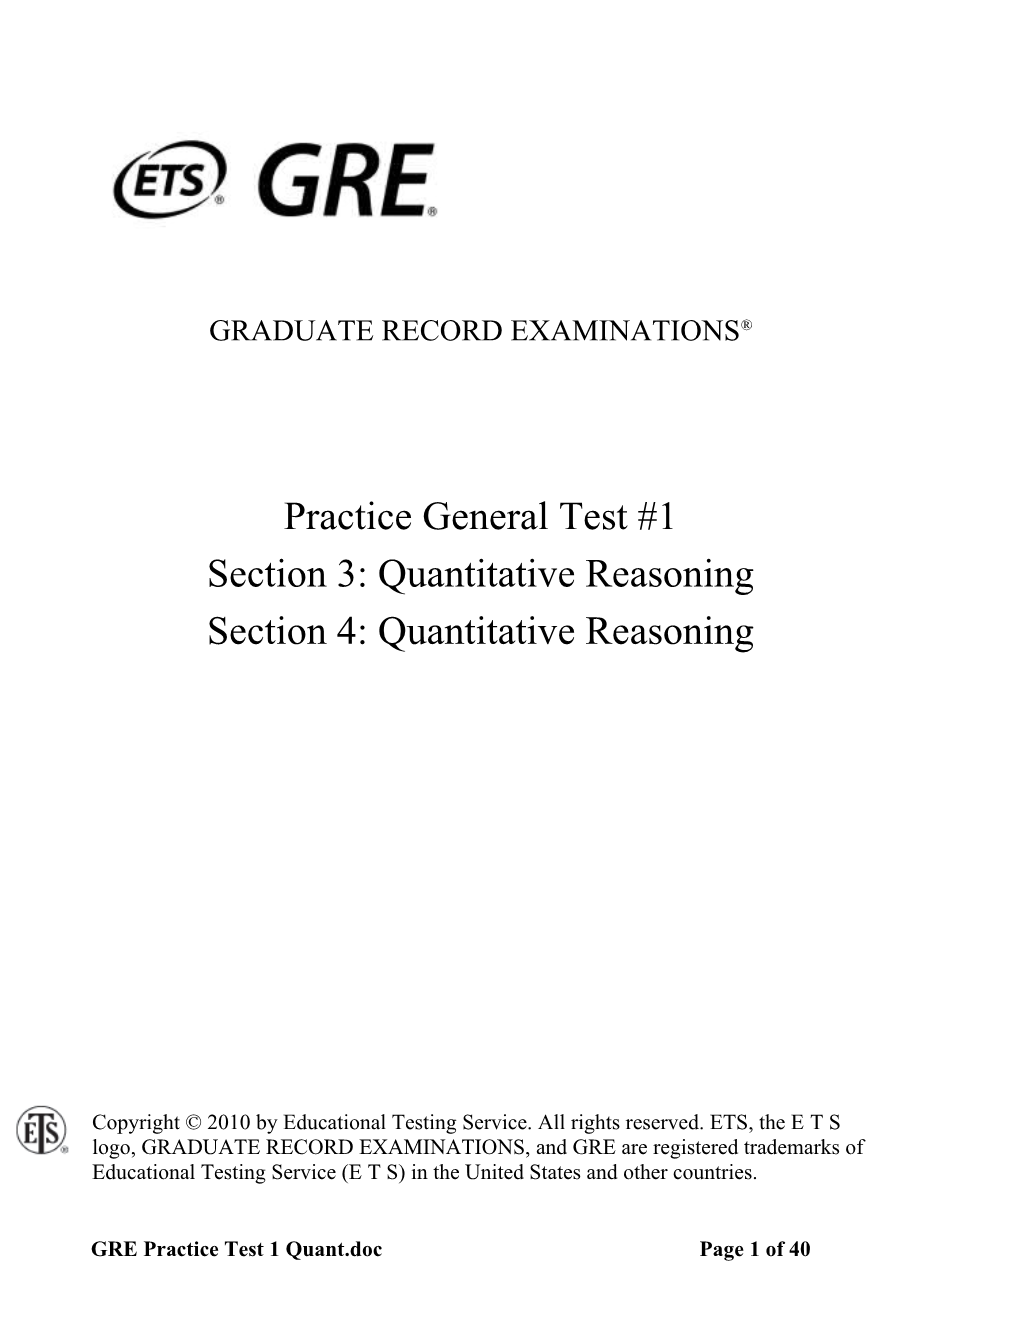 GRE Practice Test 1: Quantitative Reasoning